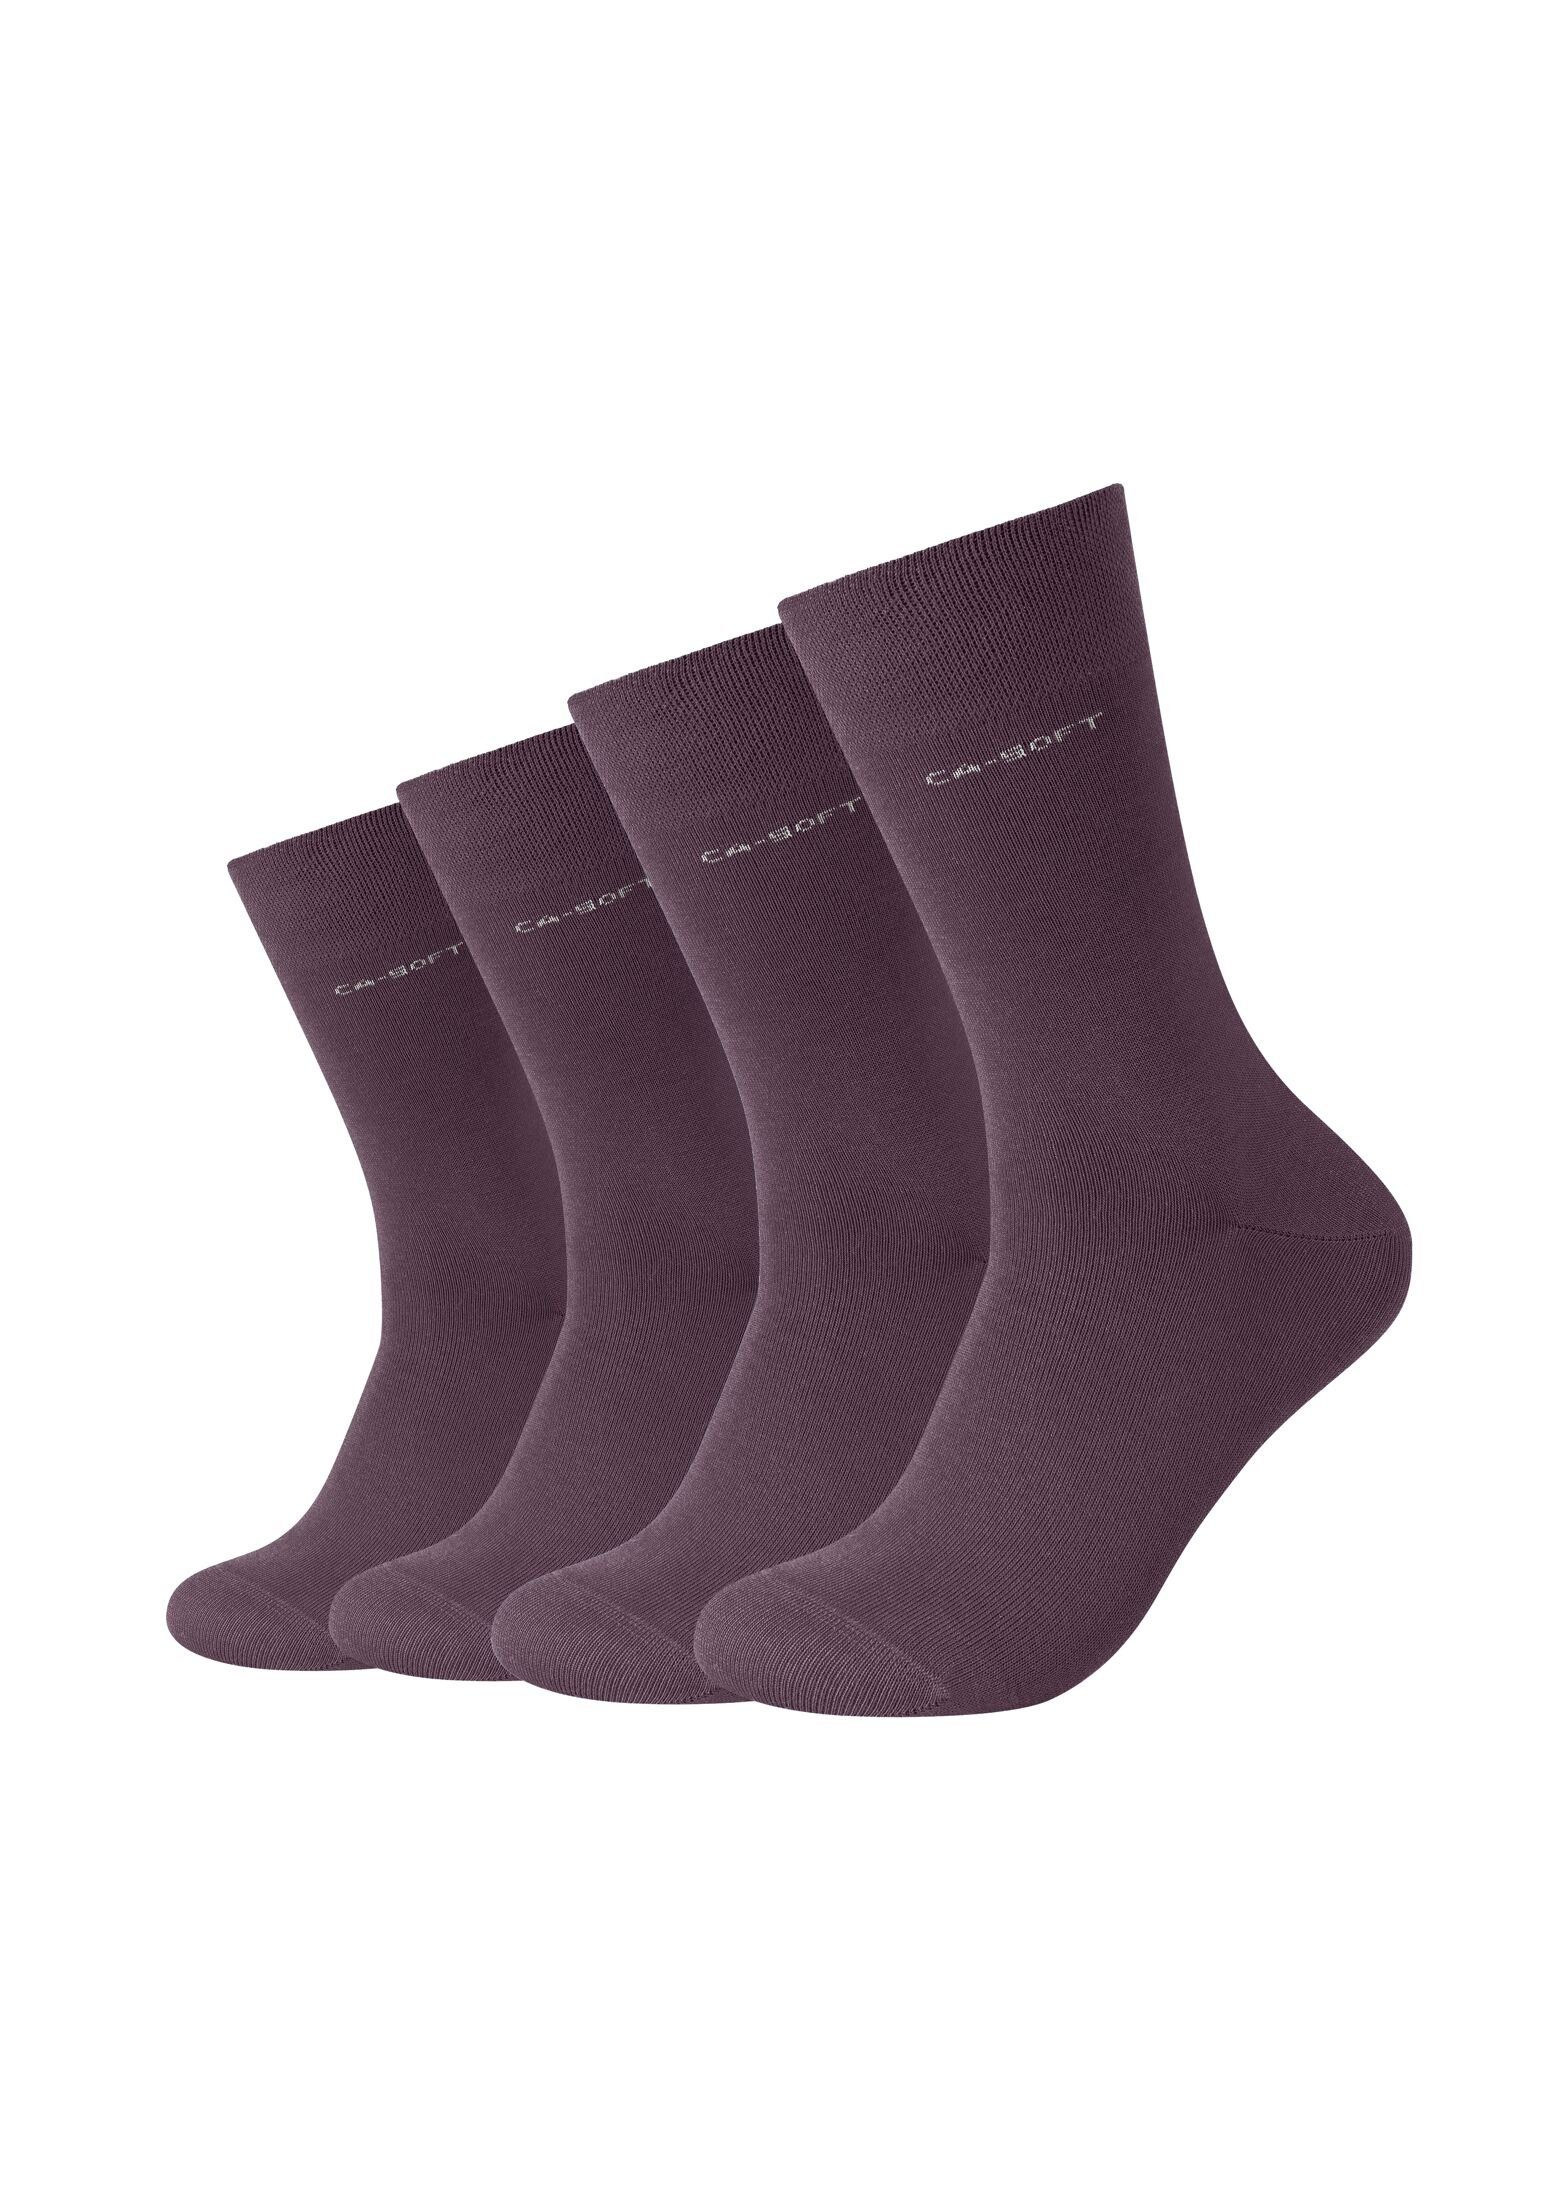 und Komfortbund Herren Socken Businesssocken für Camano purple Socken Damen Bequem potent